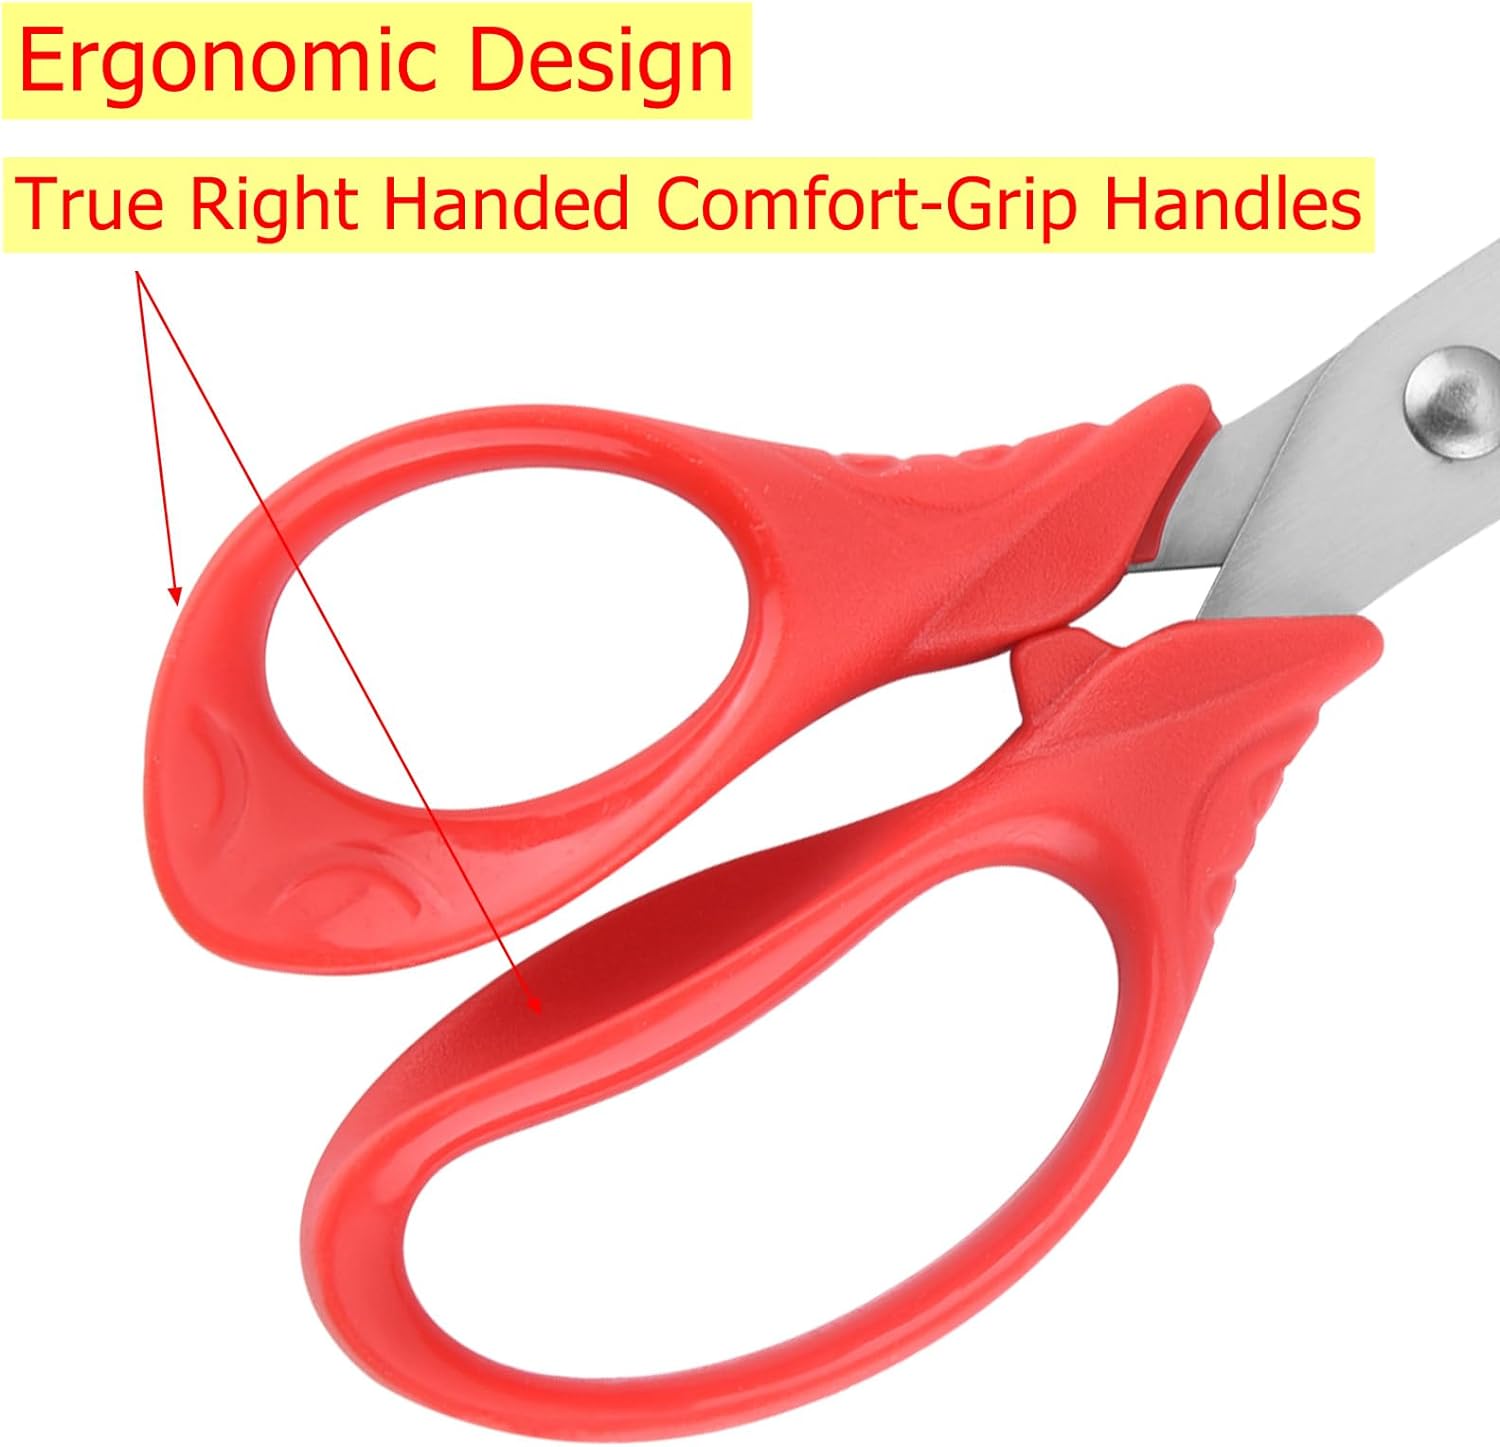 OneName Left-Handed Kids Scissors Review